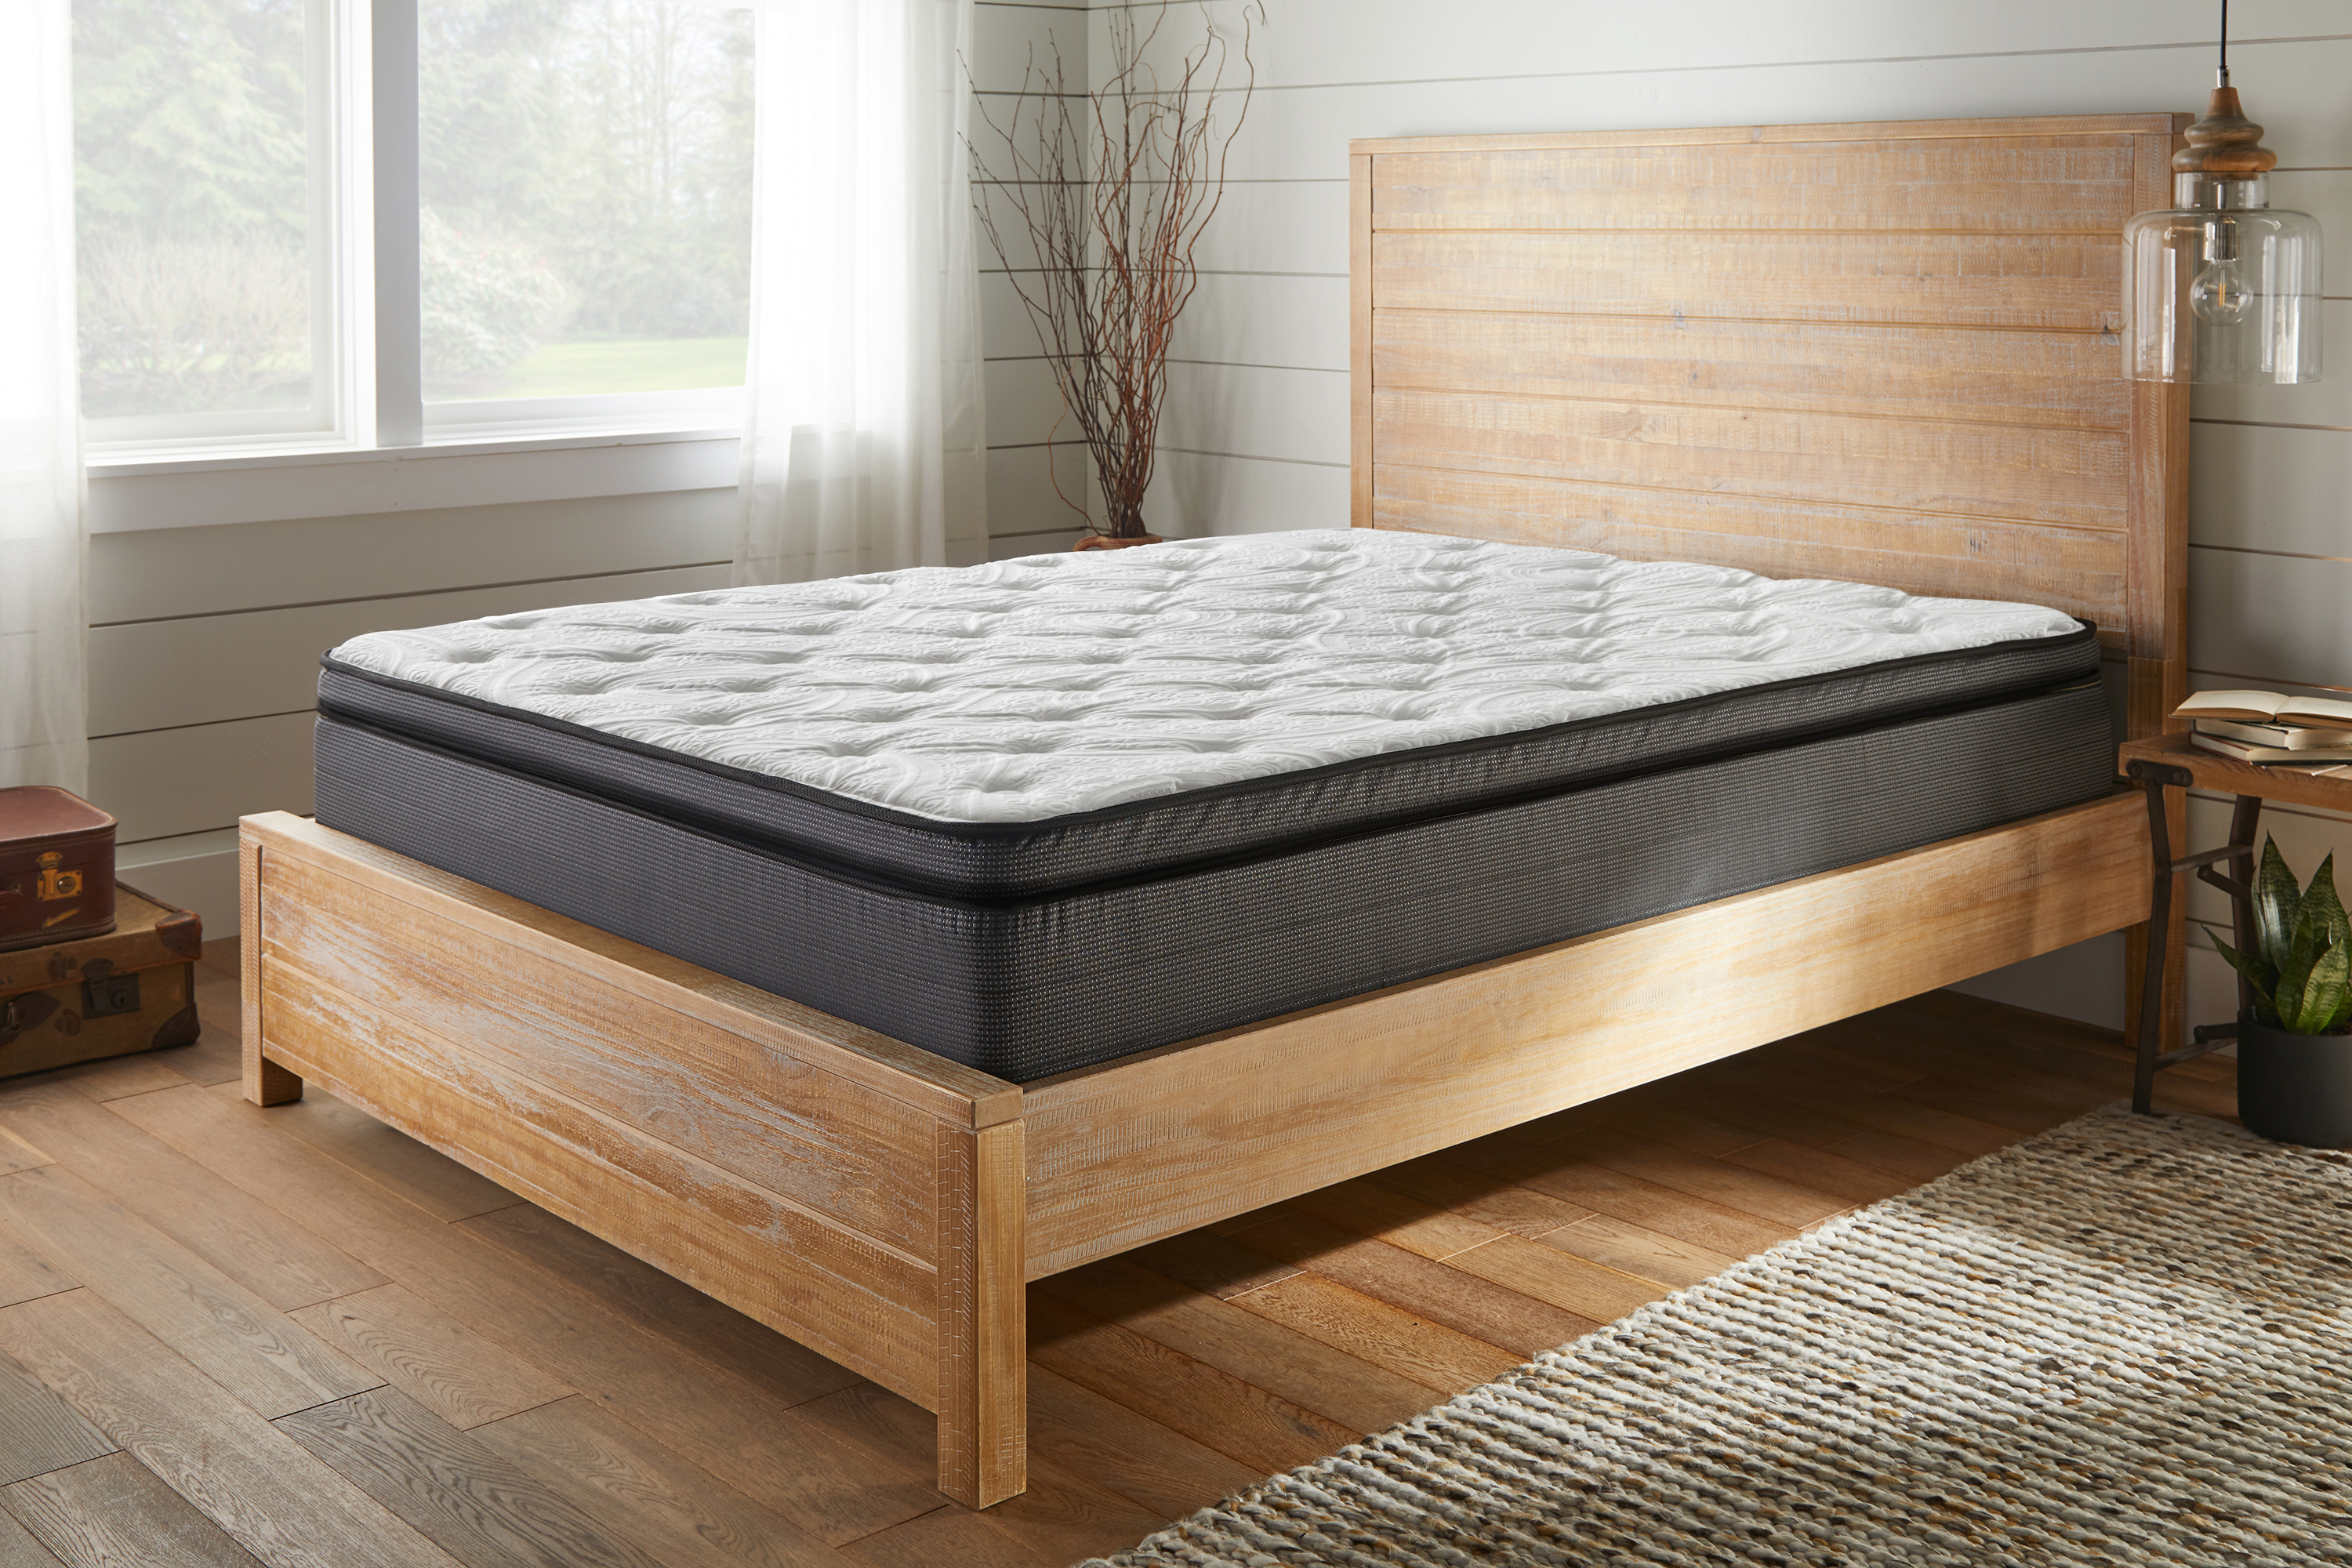 corsicana queen size mattress set